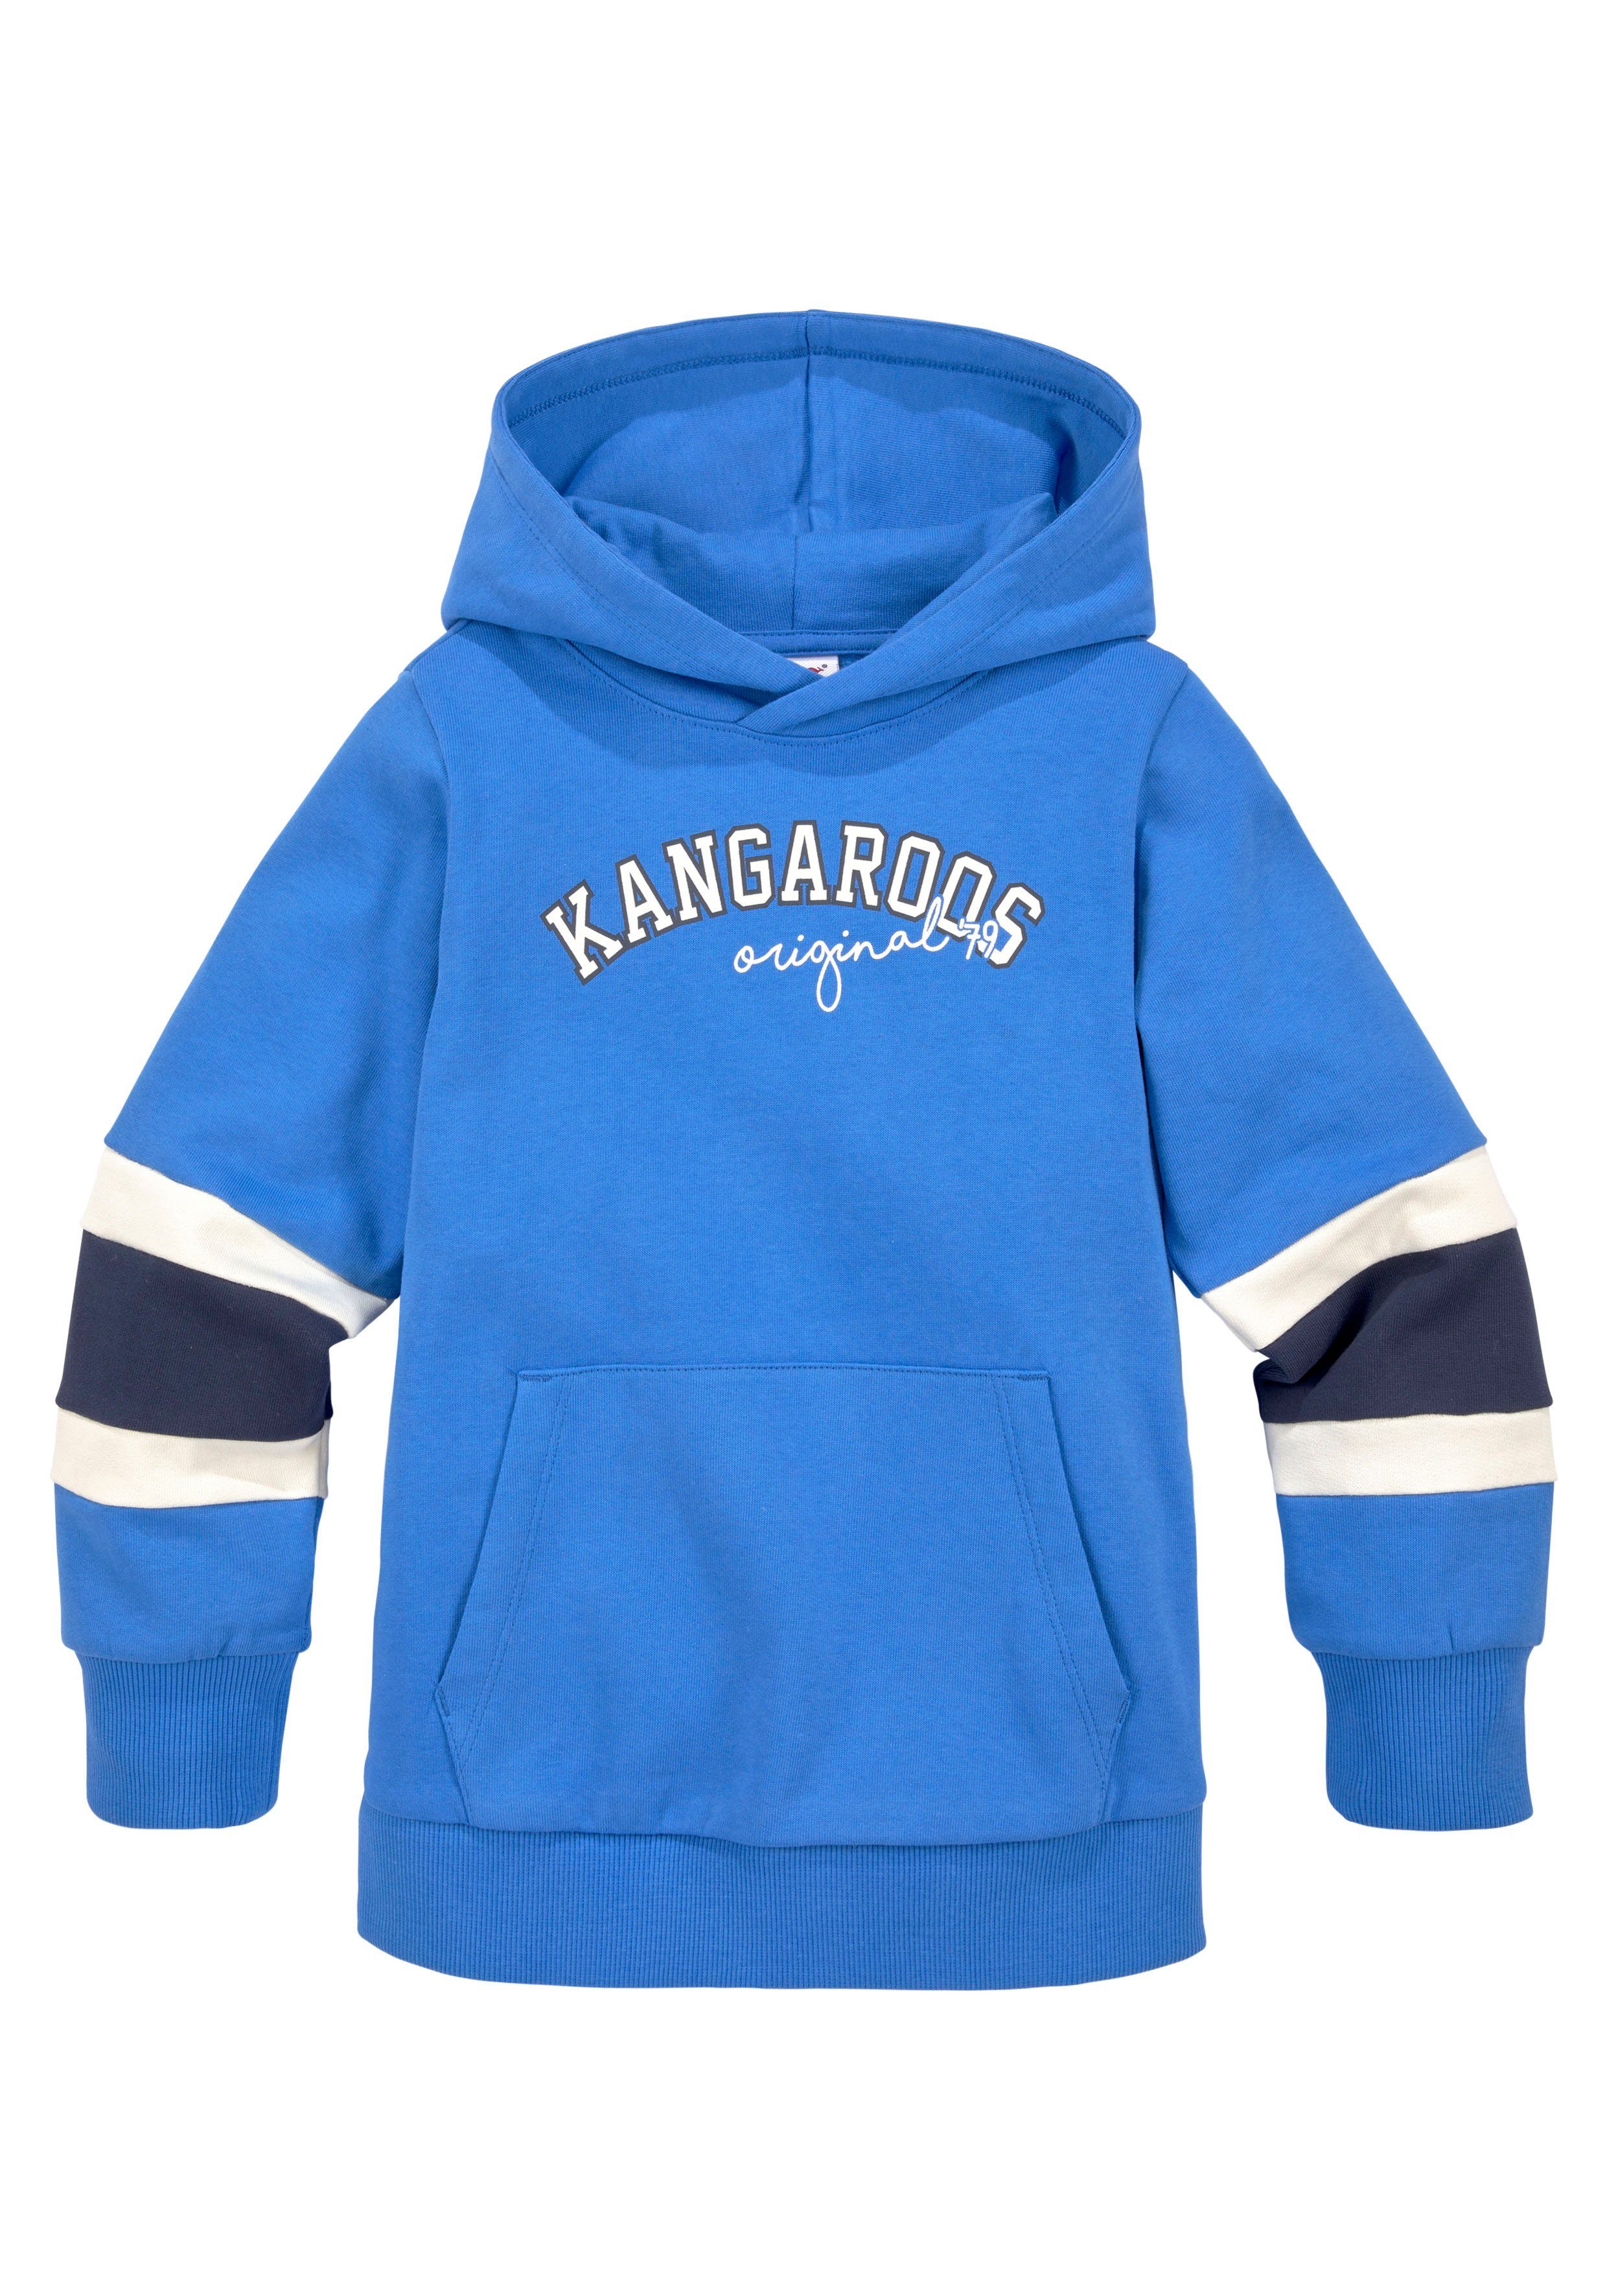 KangaROOS Kapuzensweatshirt Colorblocking, für Mini den mit Ärmeln, an Streifen Jungen